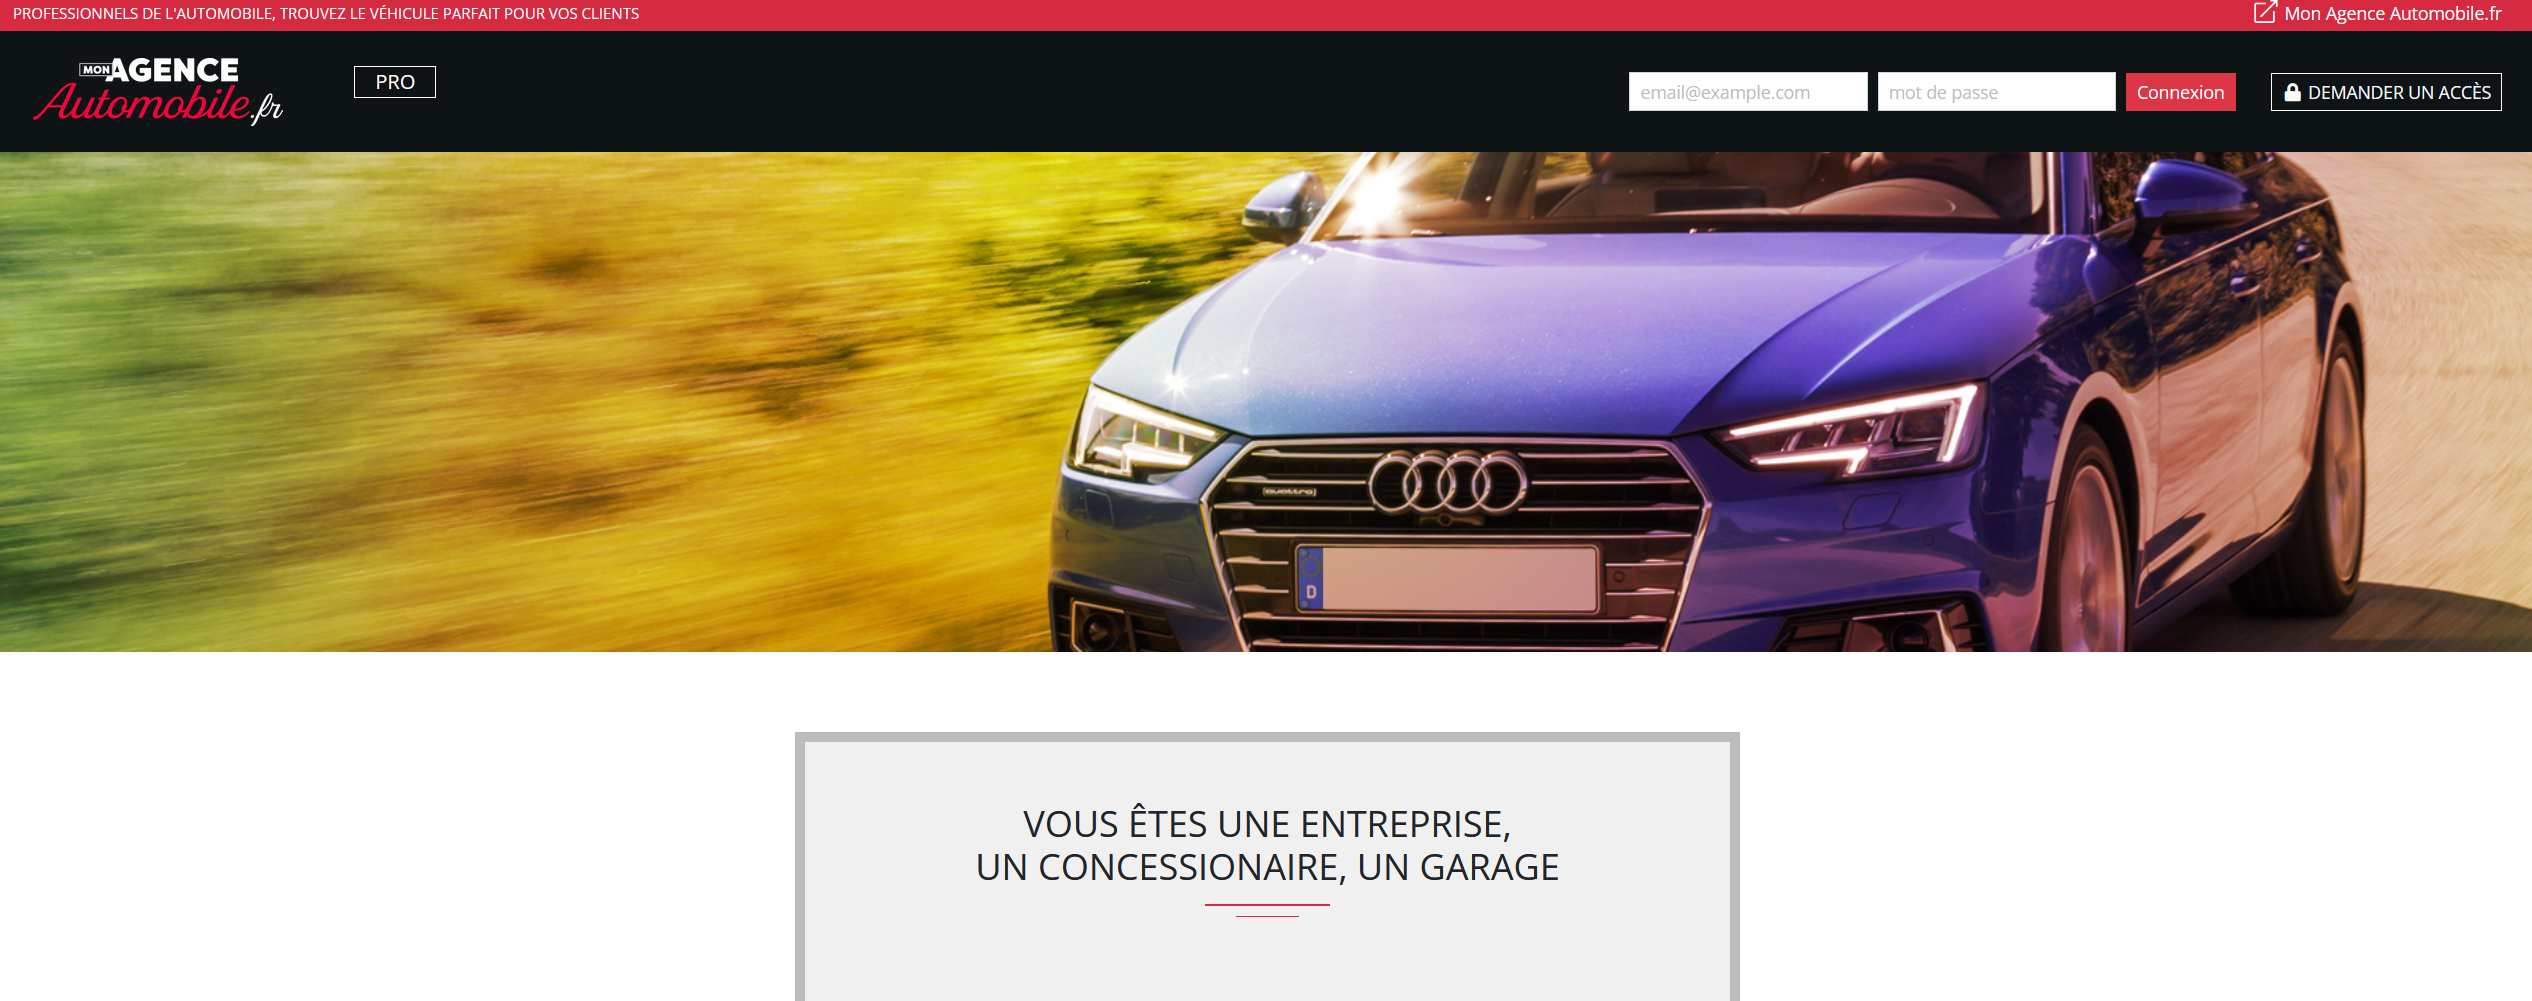 Mon Agence Automobile.fr : l'accés des pros